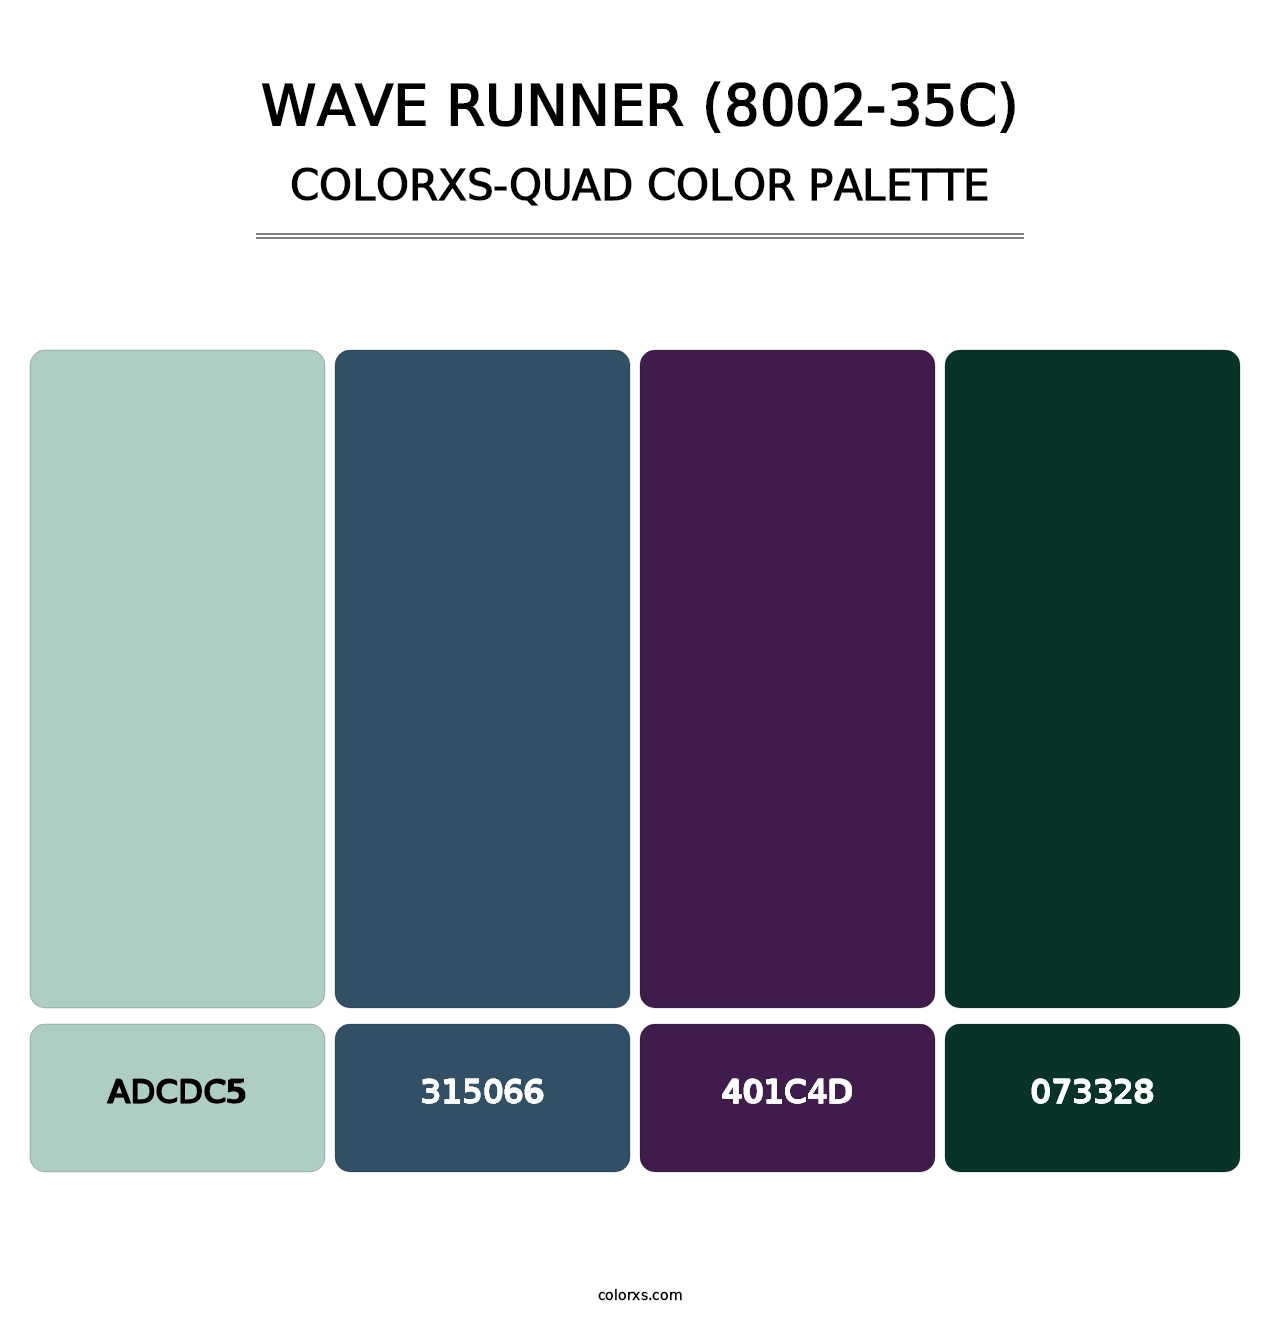 Wave Runner (8002-35C) - Colorxs Quad Palette